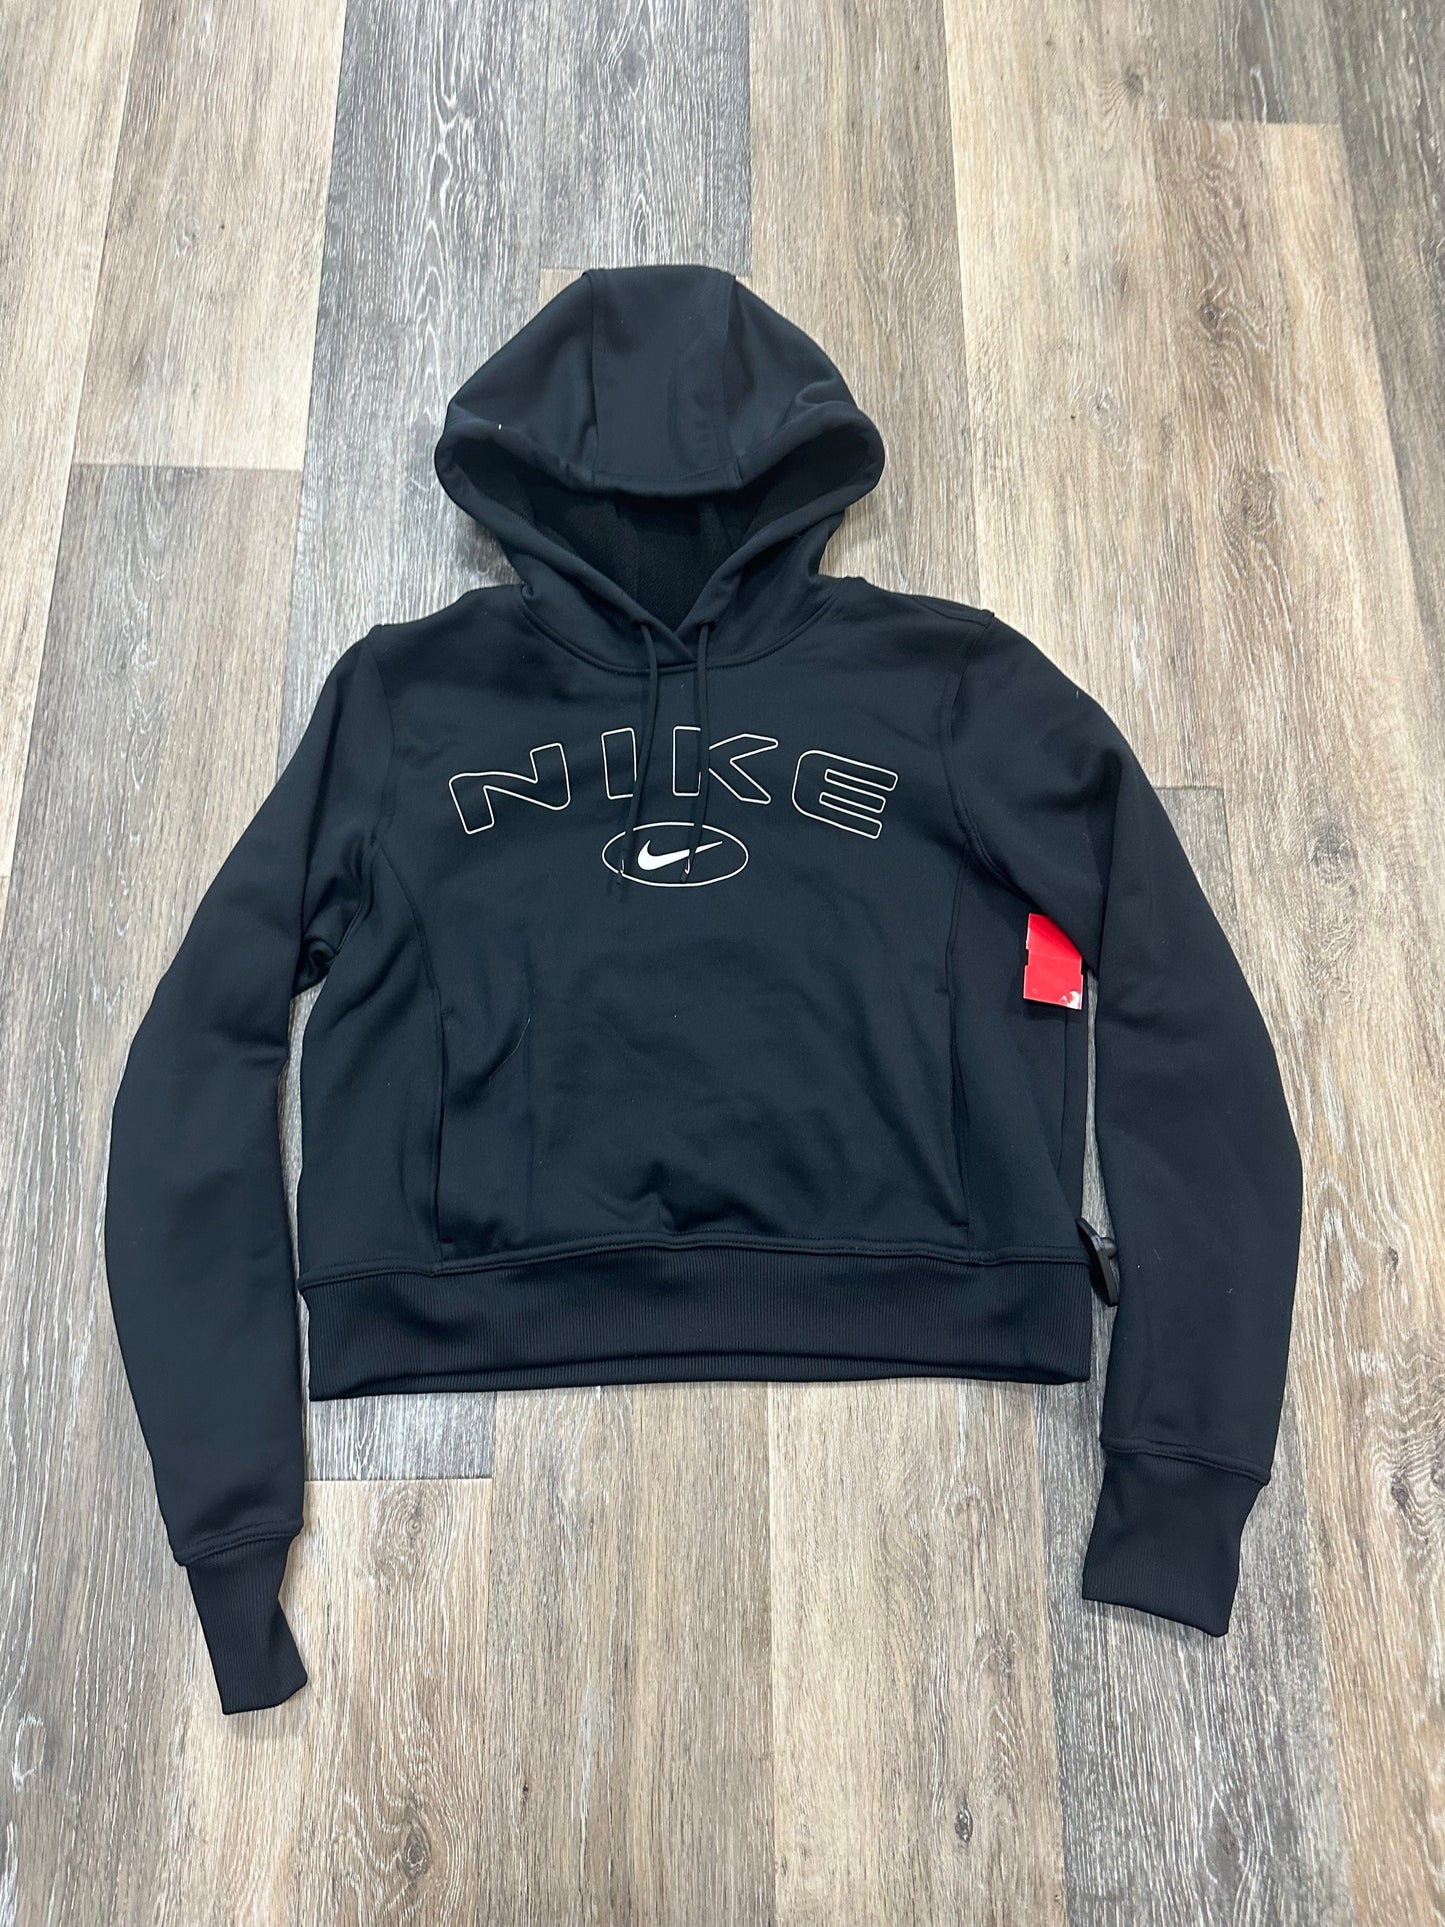 Black Athletic Sweatshirt Hoodie Nike Apparel, Size S